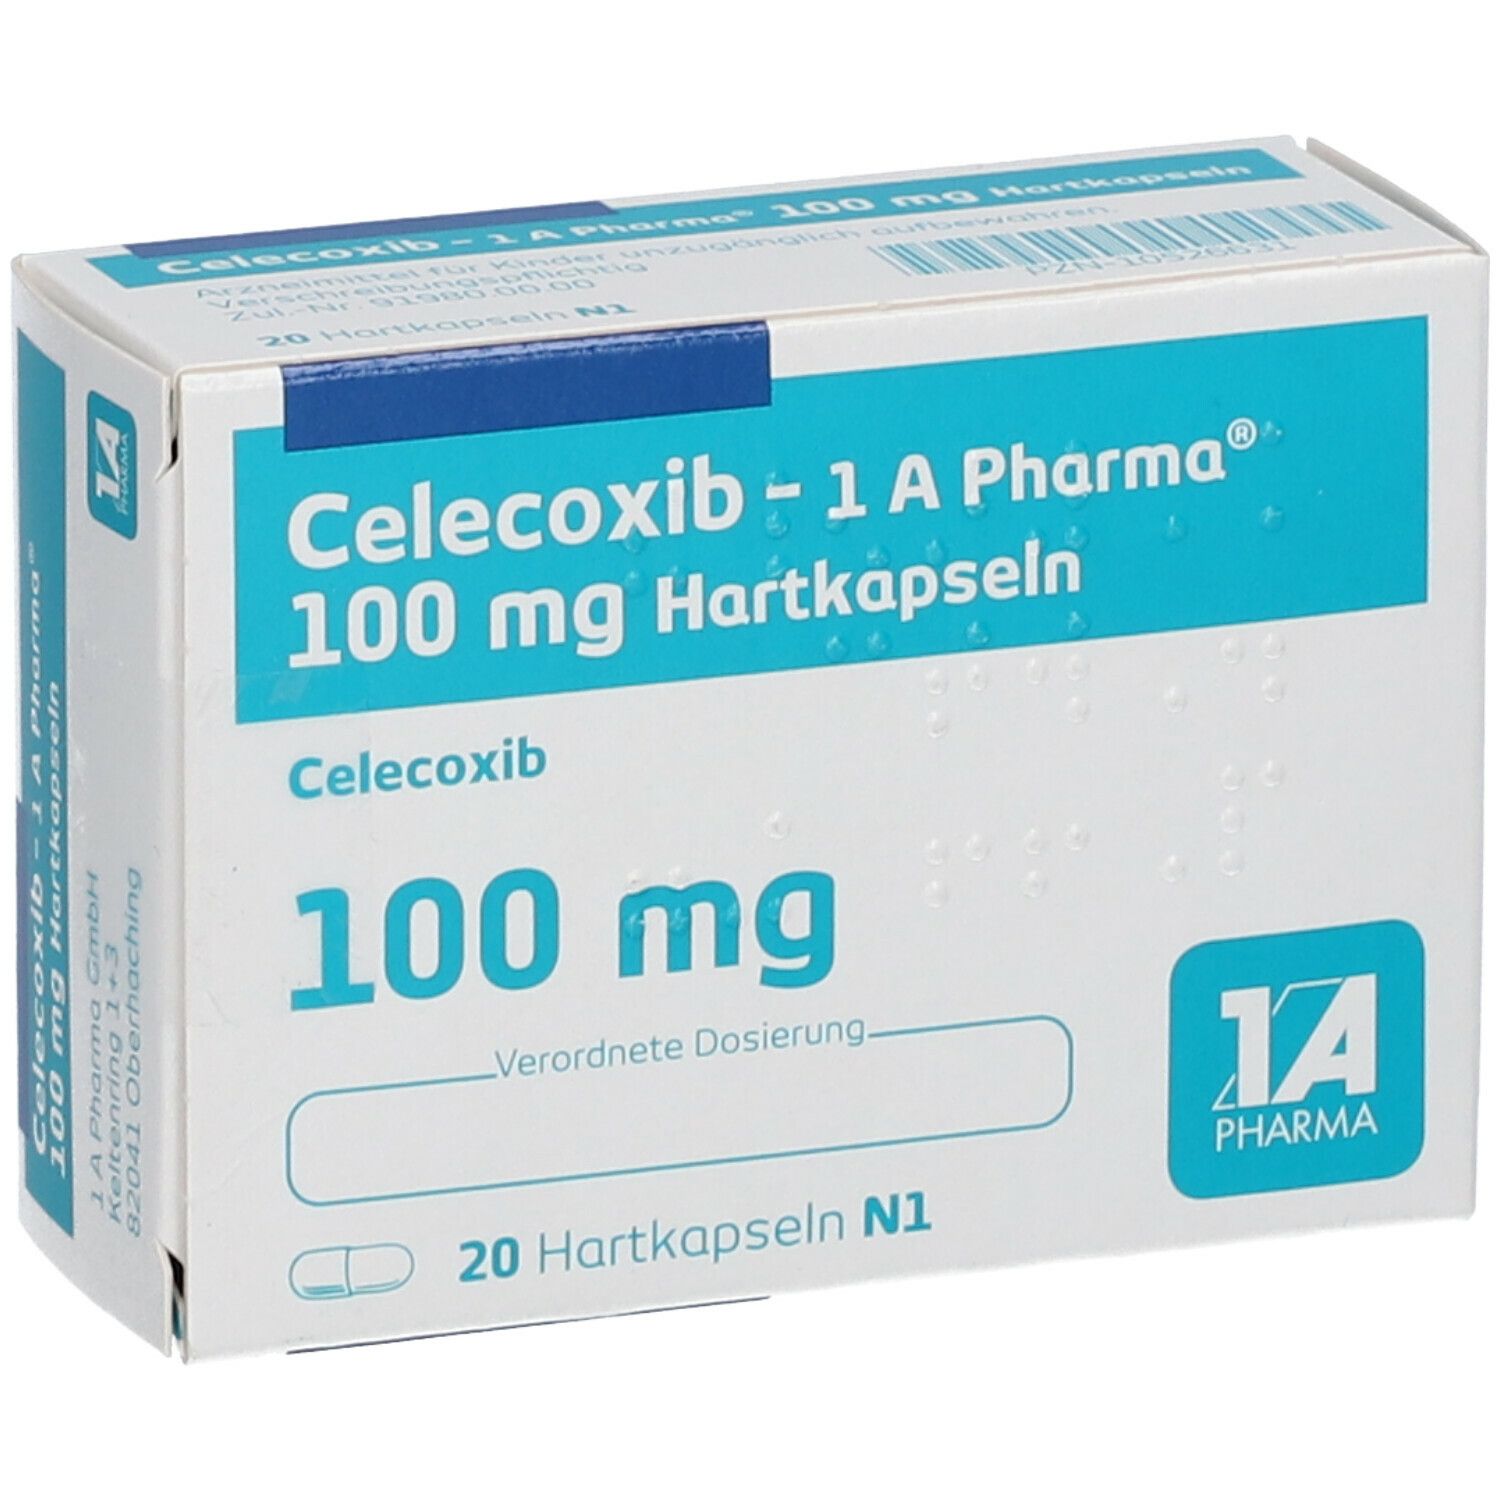 Celecoxib - 1 A Pharma® 100 mg